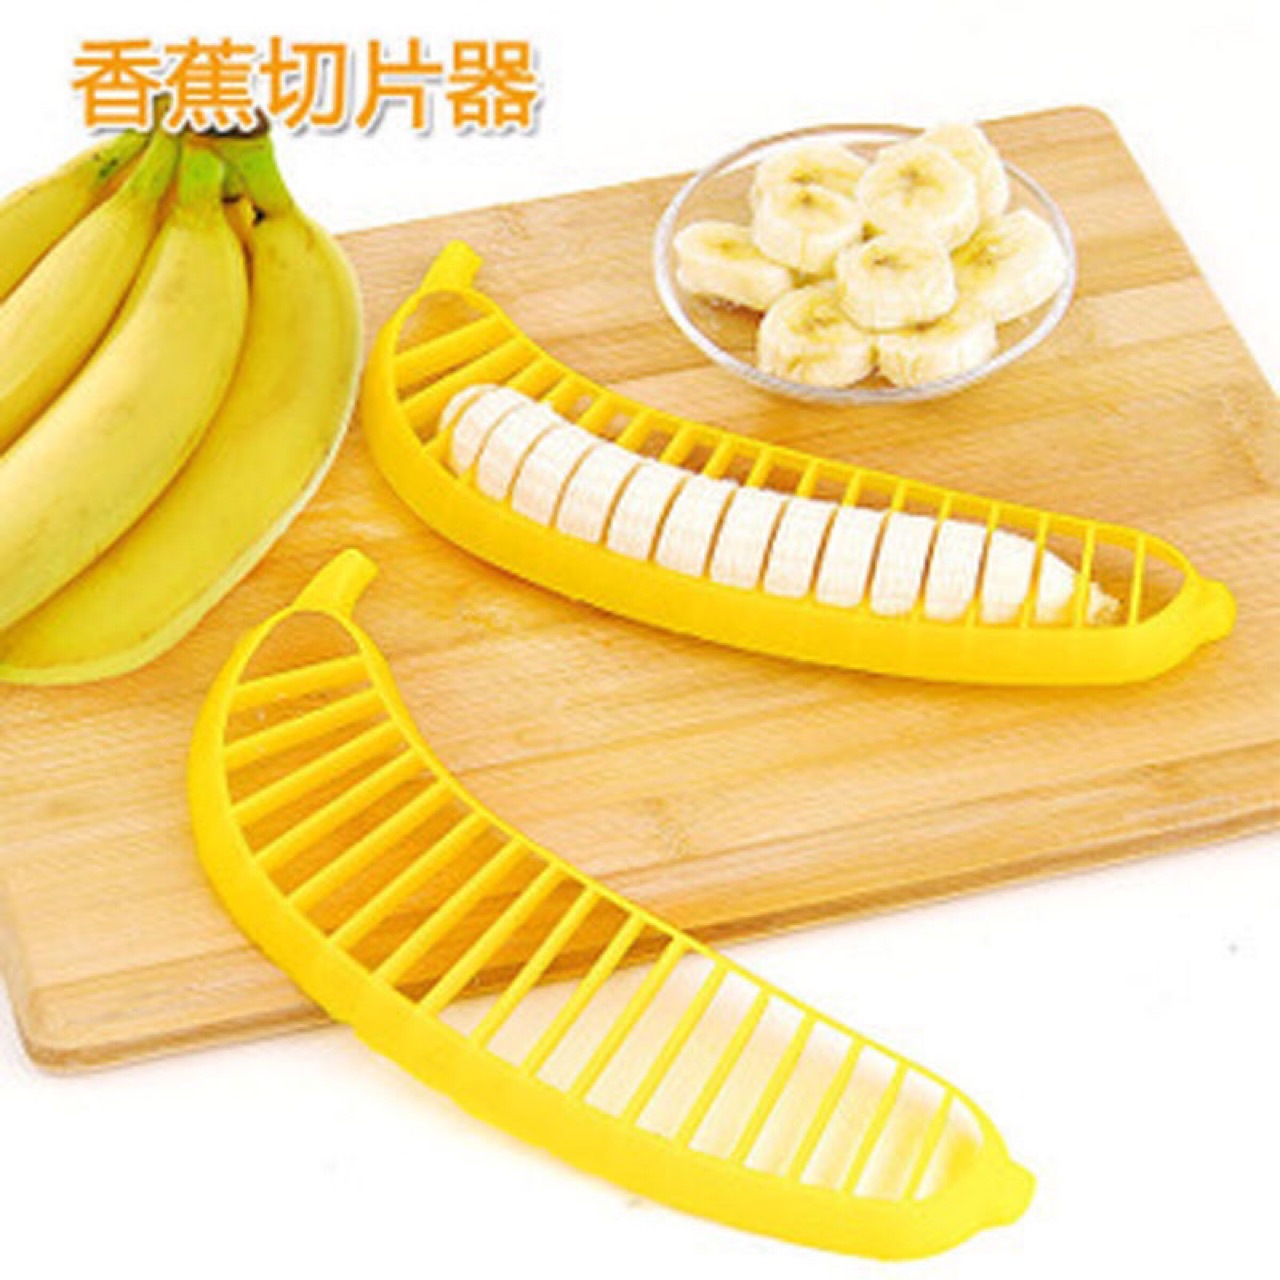 成熟黄色香蕉用切的香蕉 库存图片. 图片 包括有 详细资料, 食物, 特写镜头, 新鲜, 有机, 营养 - 132728331